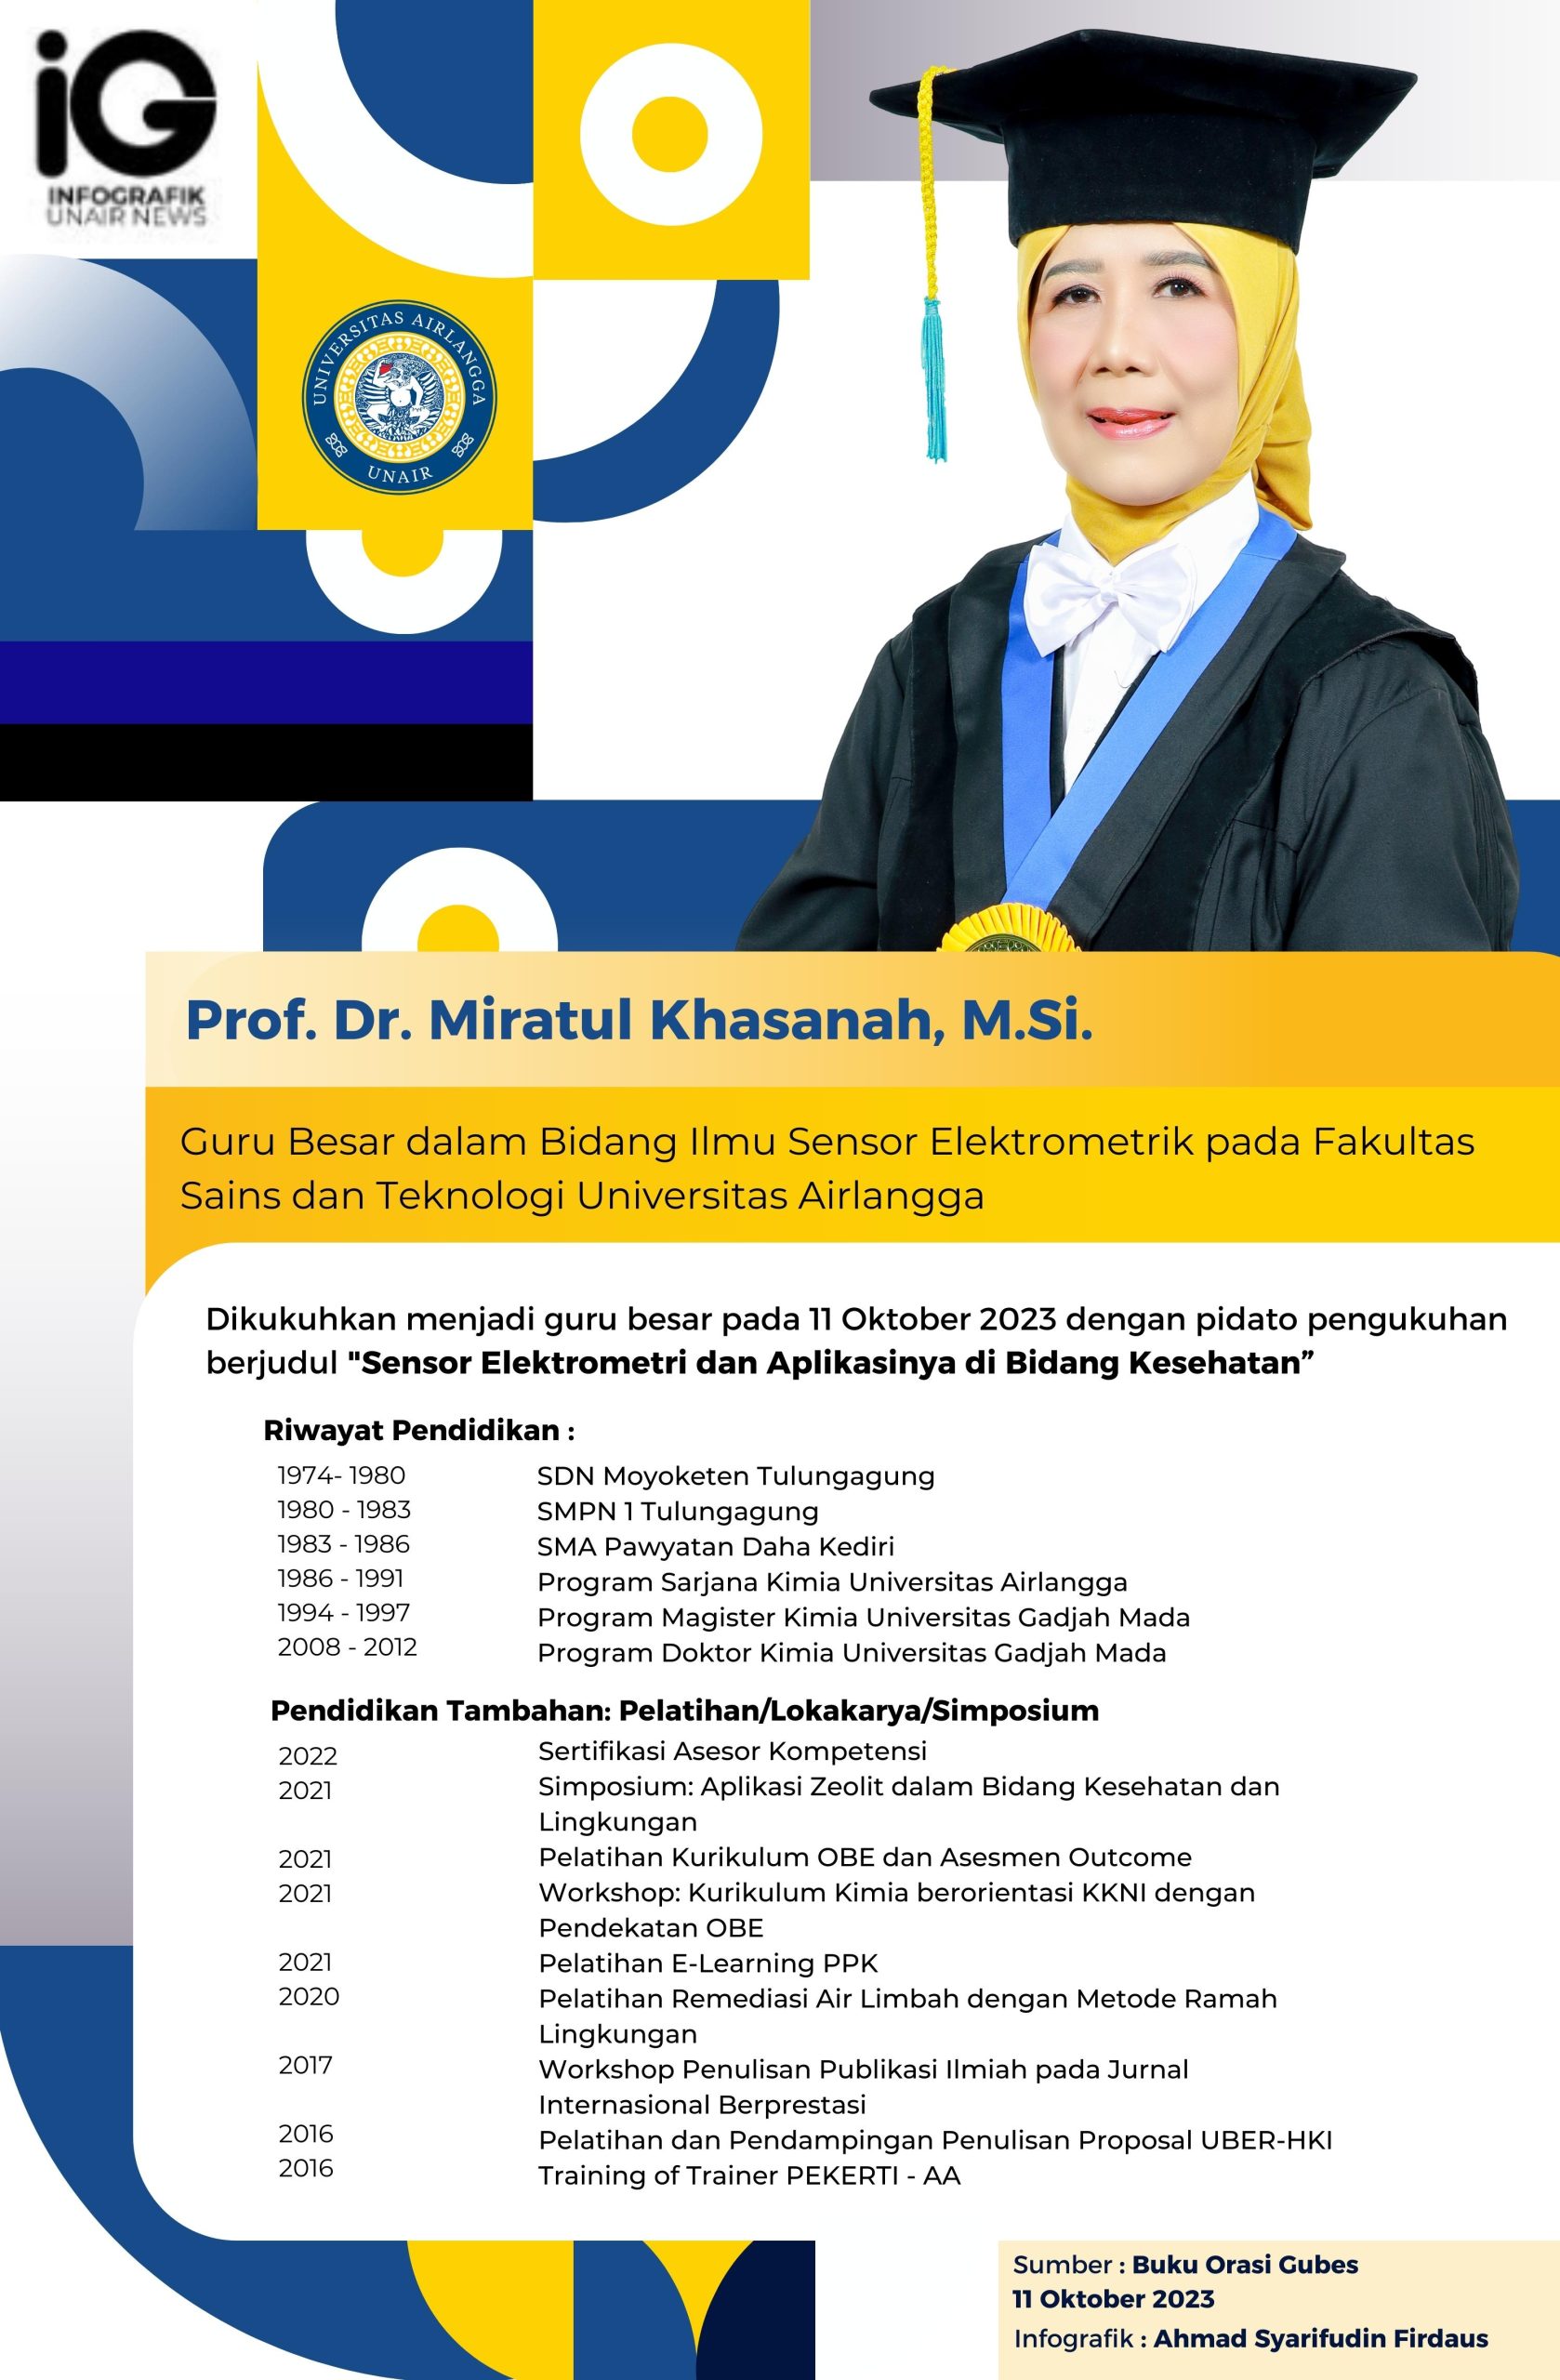 Profil Guru Besar Prof. Dr. Miratul Khasanah, M.Si.